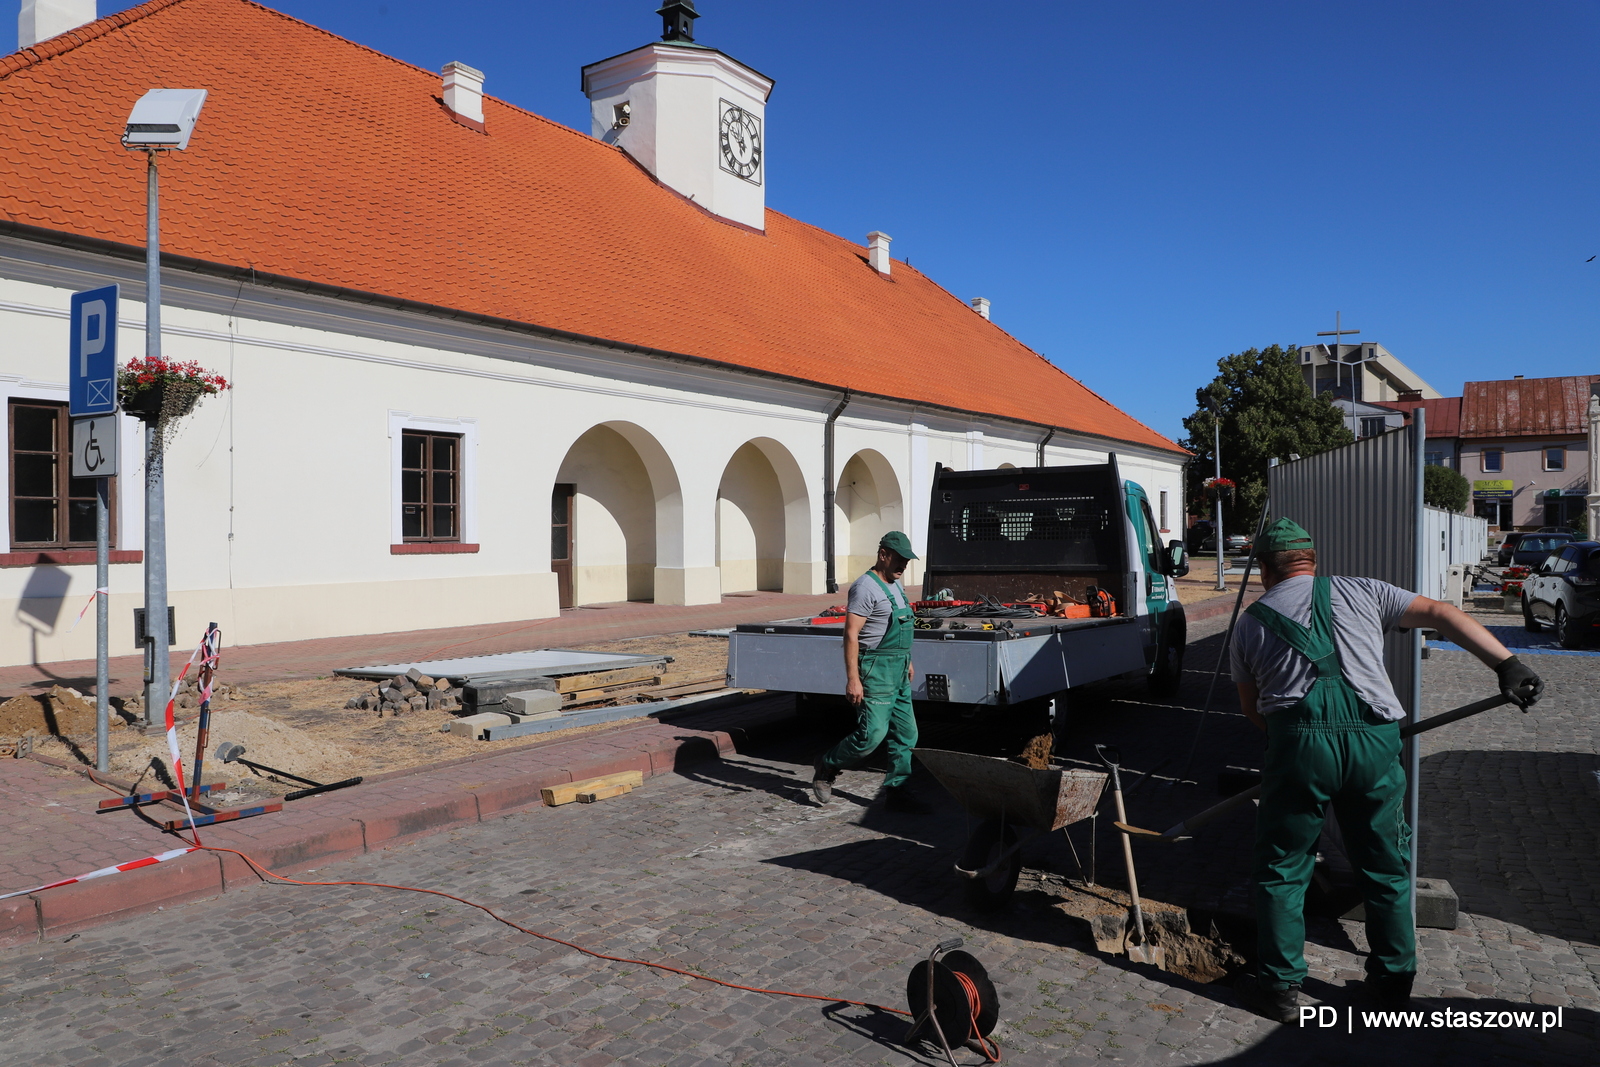 Ruszyła rewitalizacja centrum starego miasta Staszowa